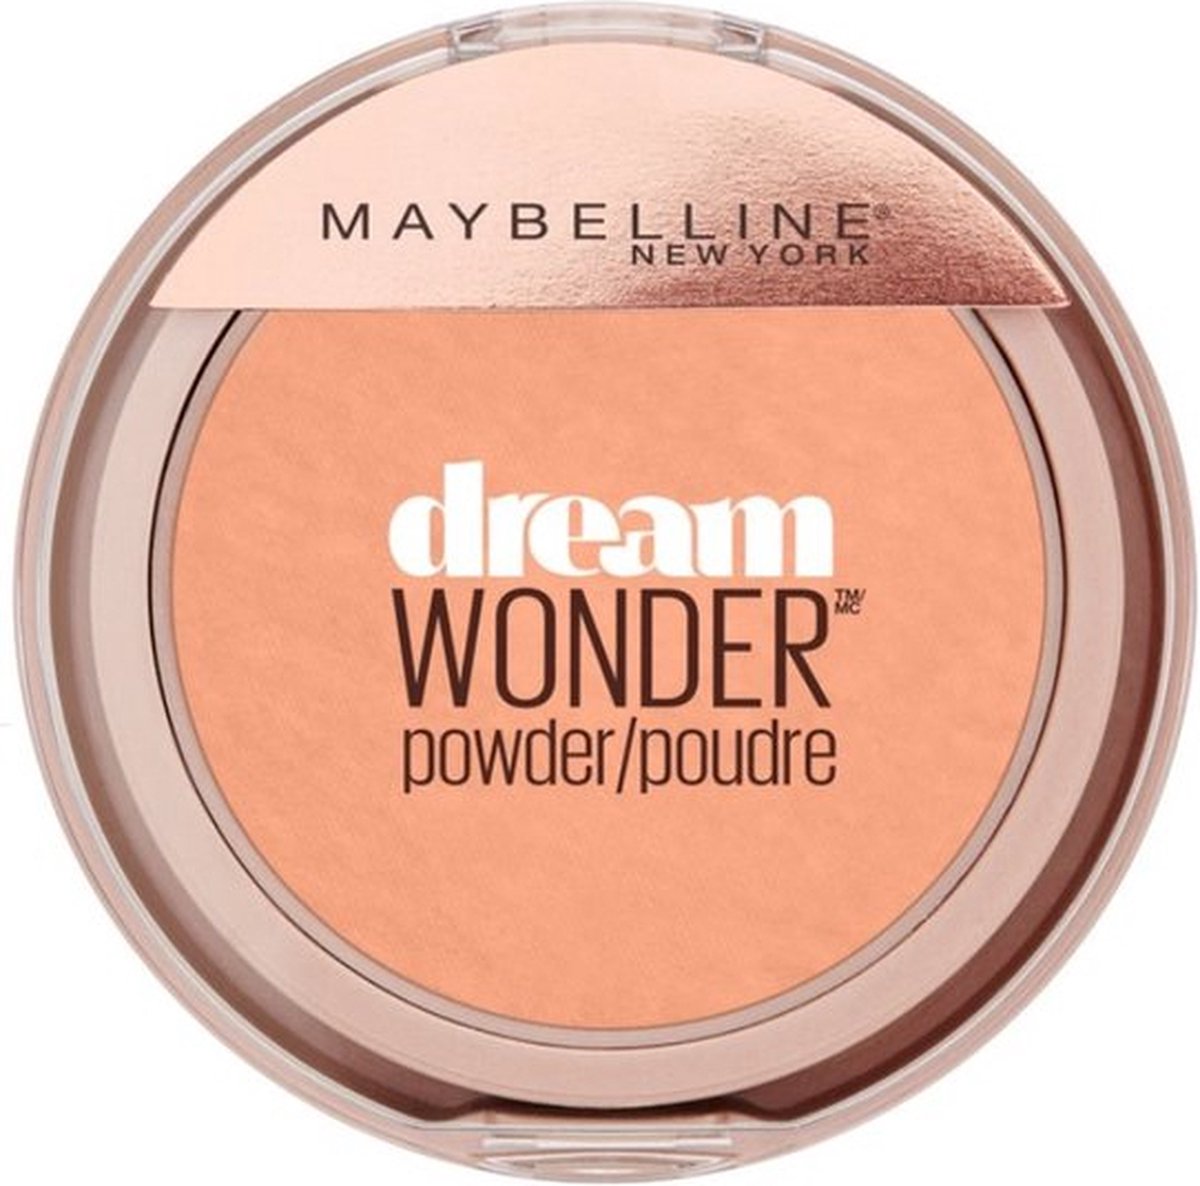 Maybelline Dream Wonder Powder - 75 Pure Beige - Maybelline